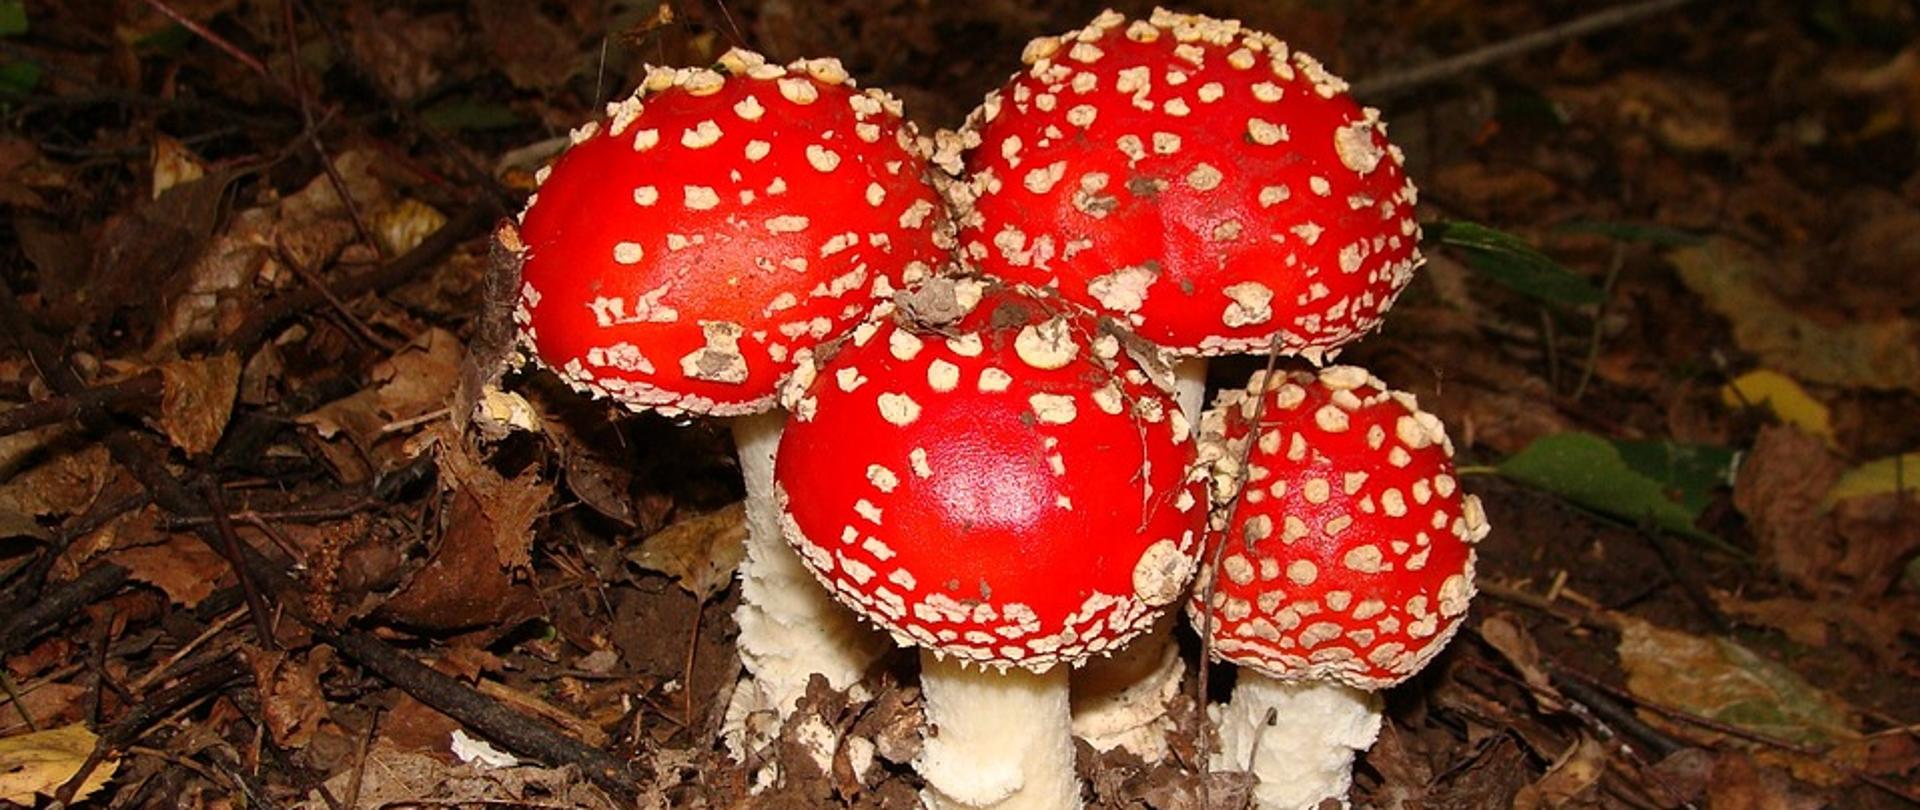 4 trujące grzyby z czerwonymi kapeluszami w białe kropki